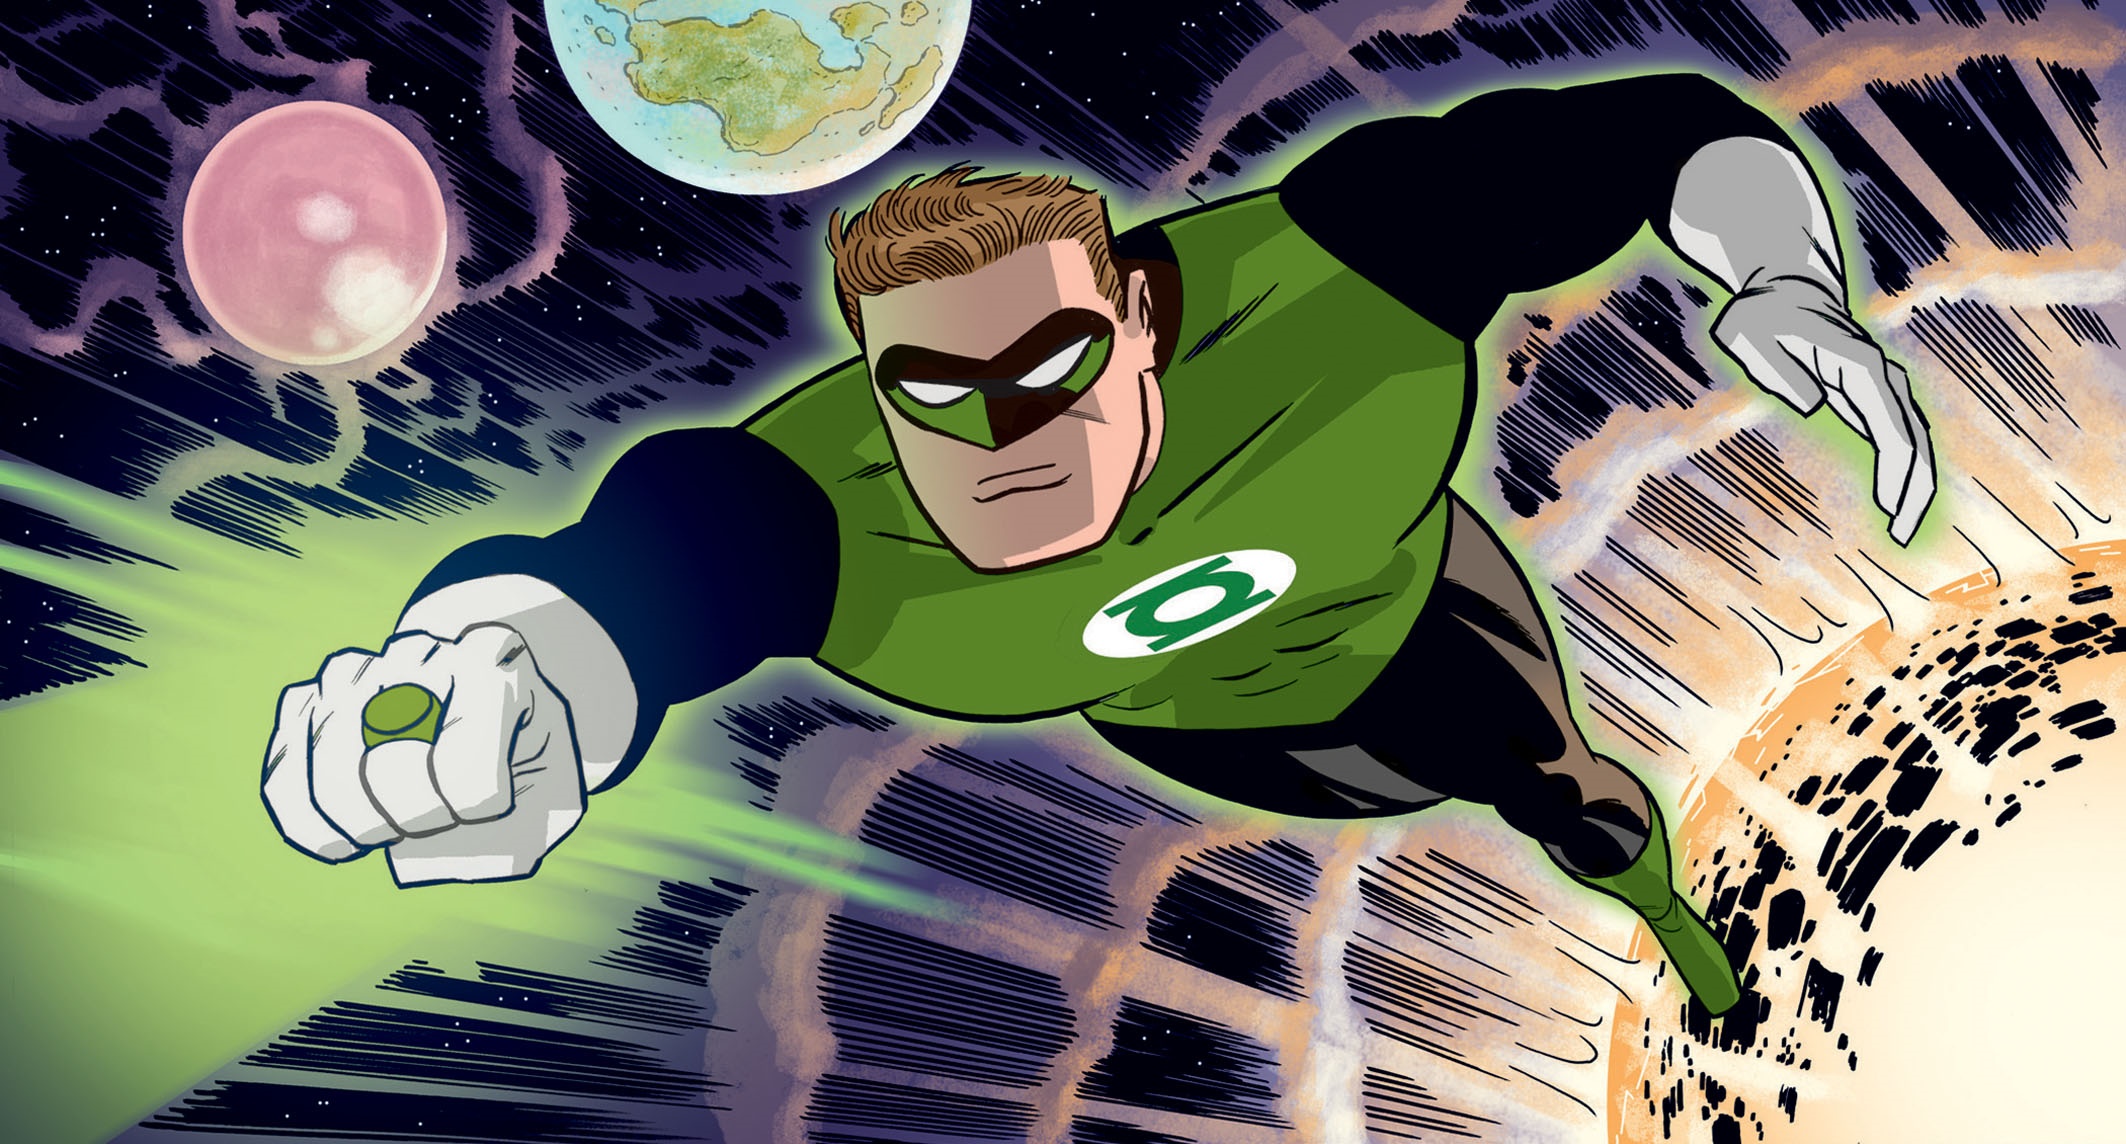 Green Lantern Art by Darwyn Cooke